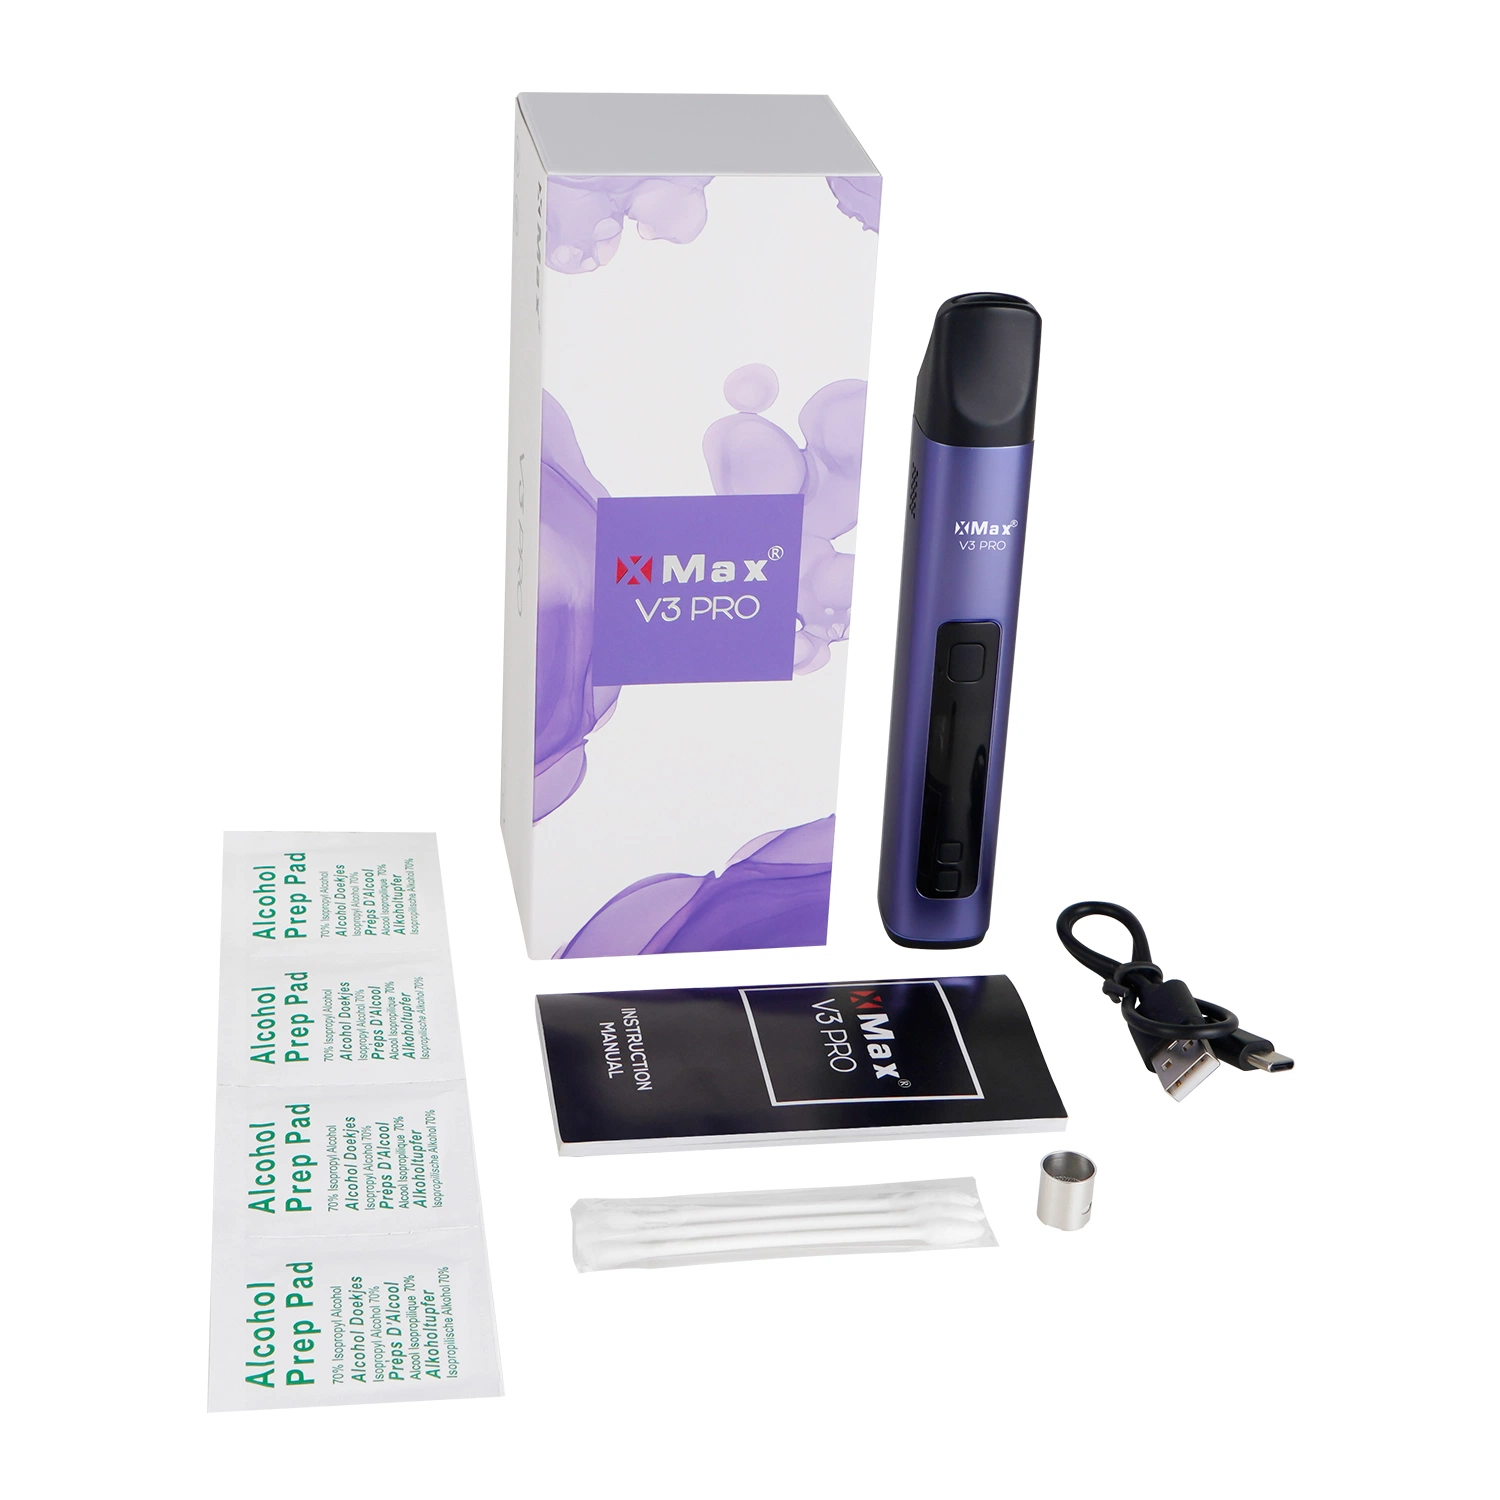 Convection Topgreen nouveau Herb savoureux Vape stylo de la technologie de la fumée de la fabrication d'e-cigarette Starter Kits Xmax V3 PRO Derniers produits sur le marché